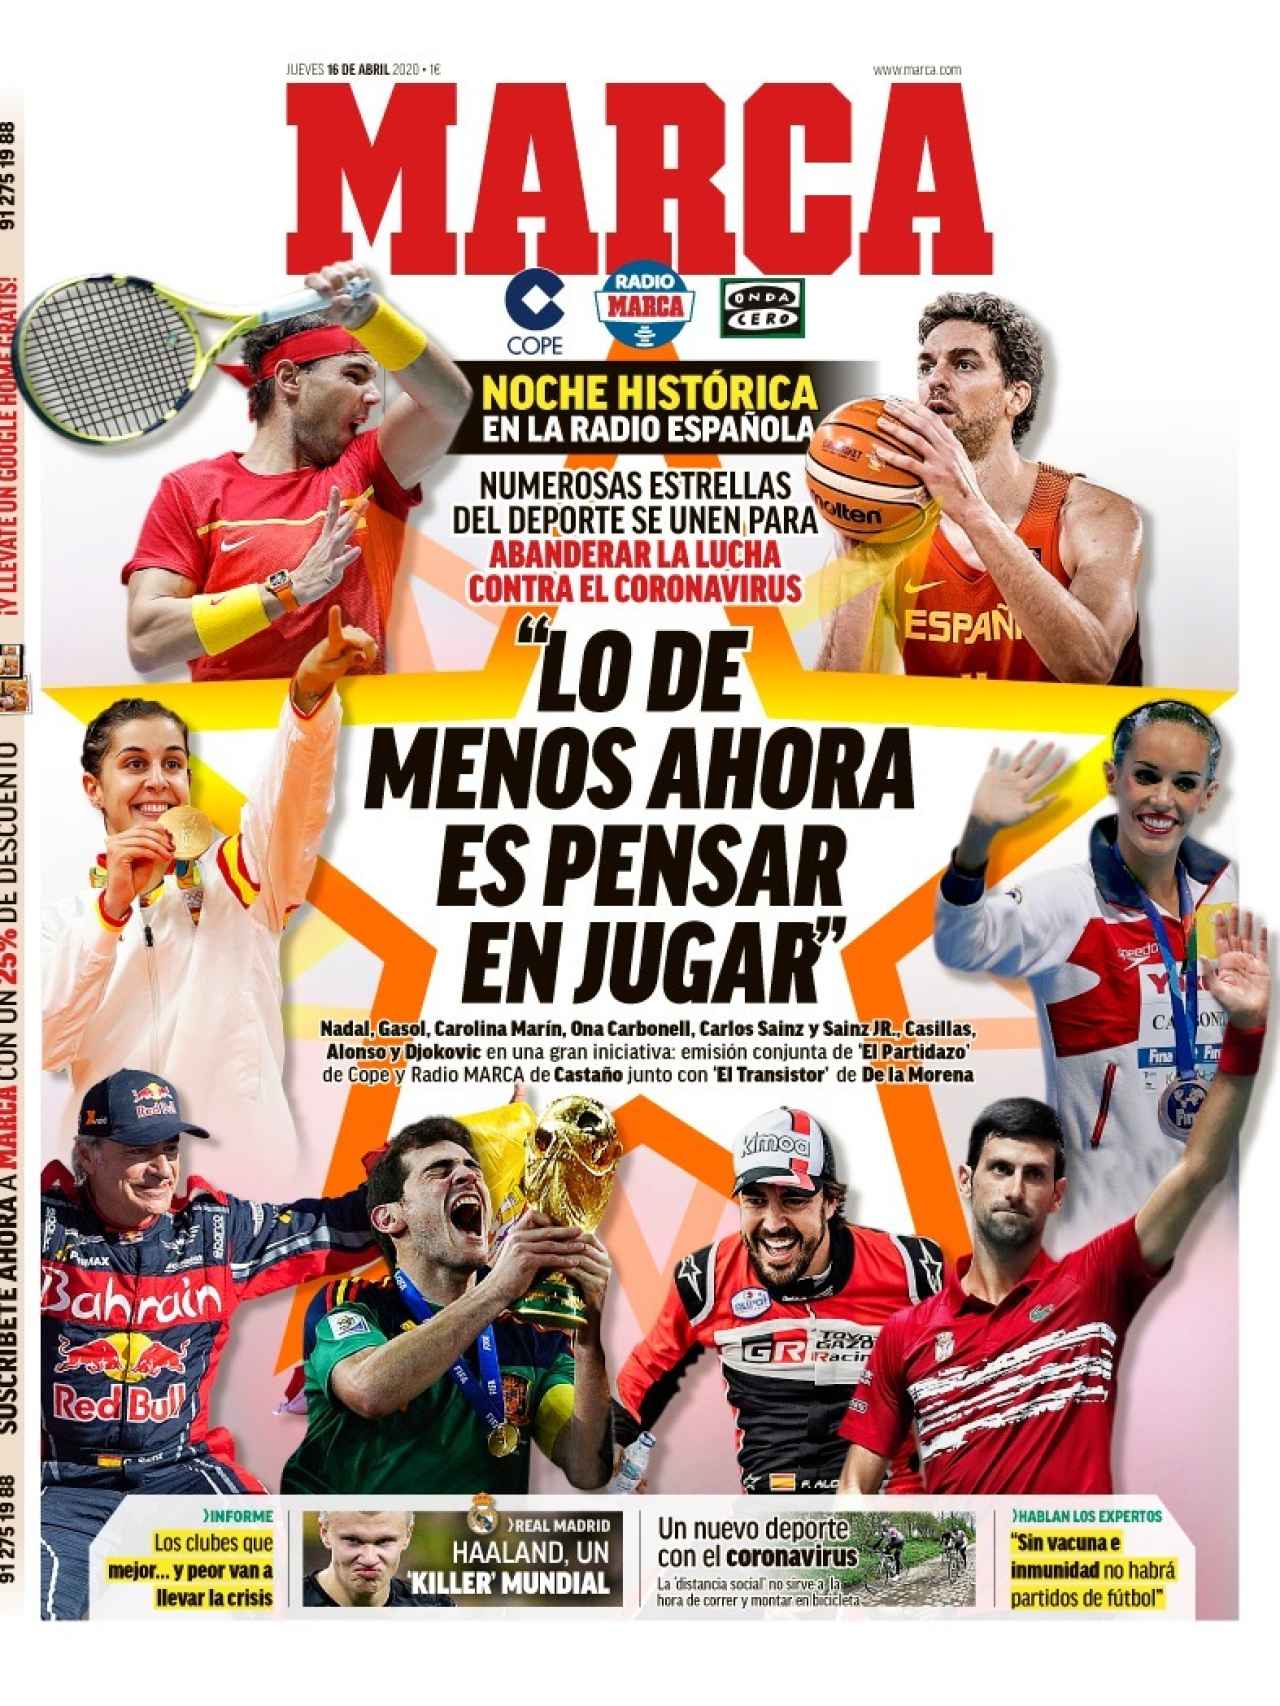 La portada del diario MARCA (16/04/2020)